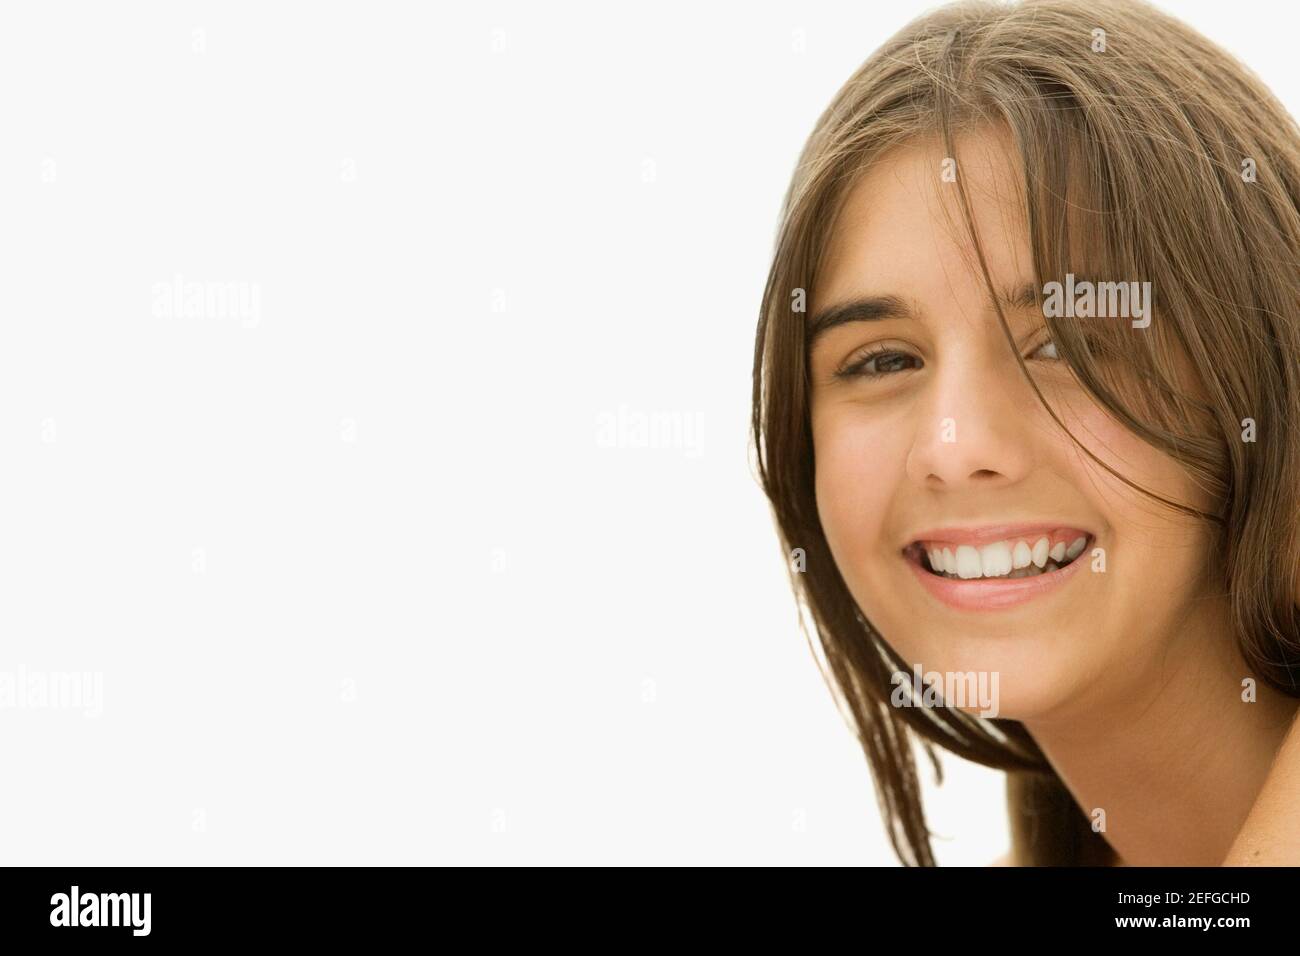 Retrato de una chica sonriente Foto de stock